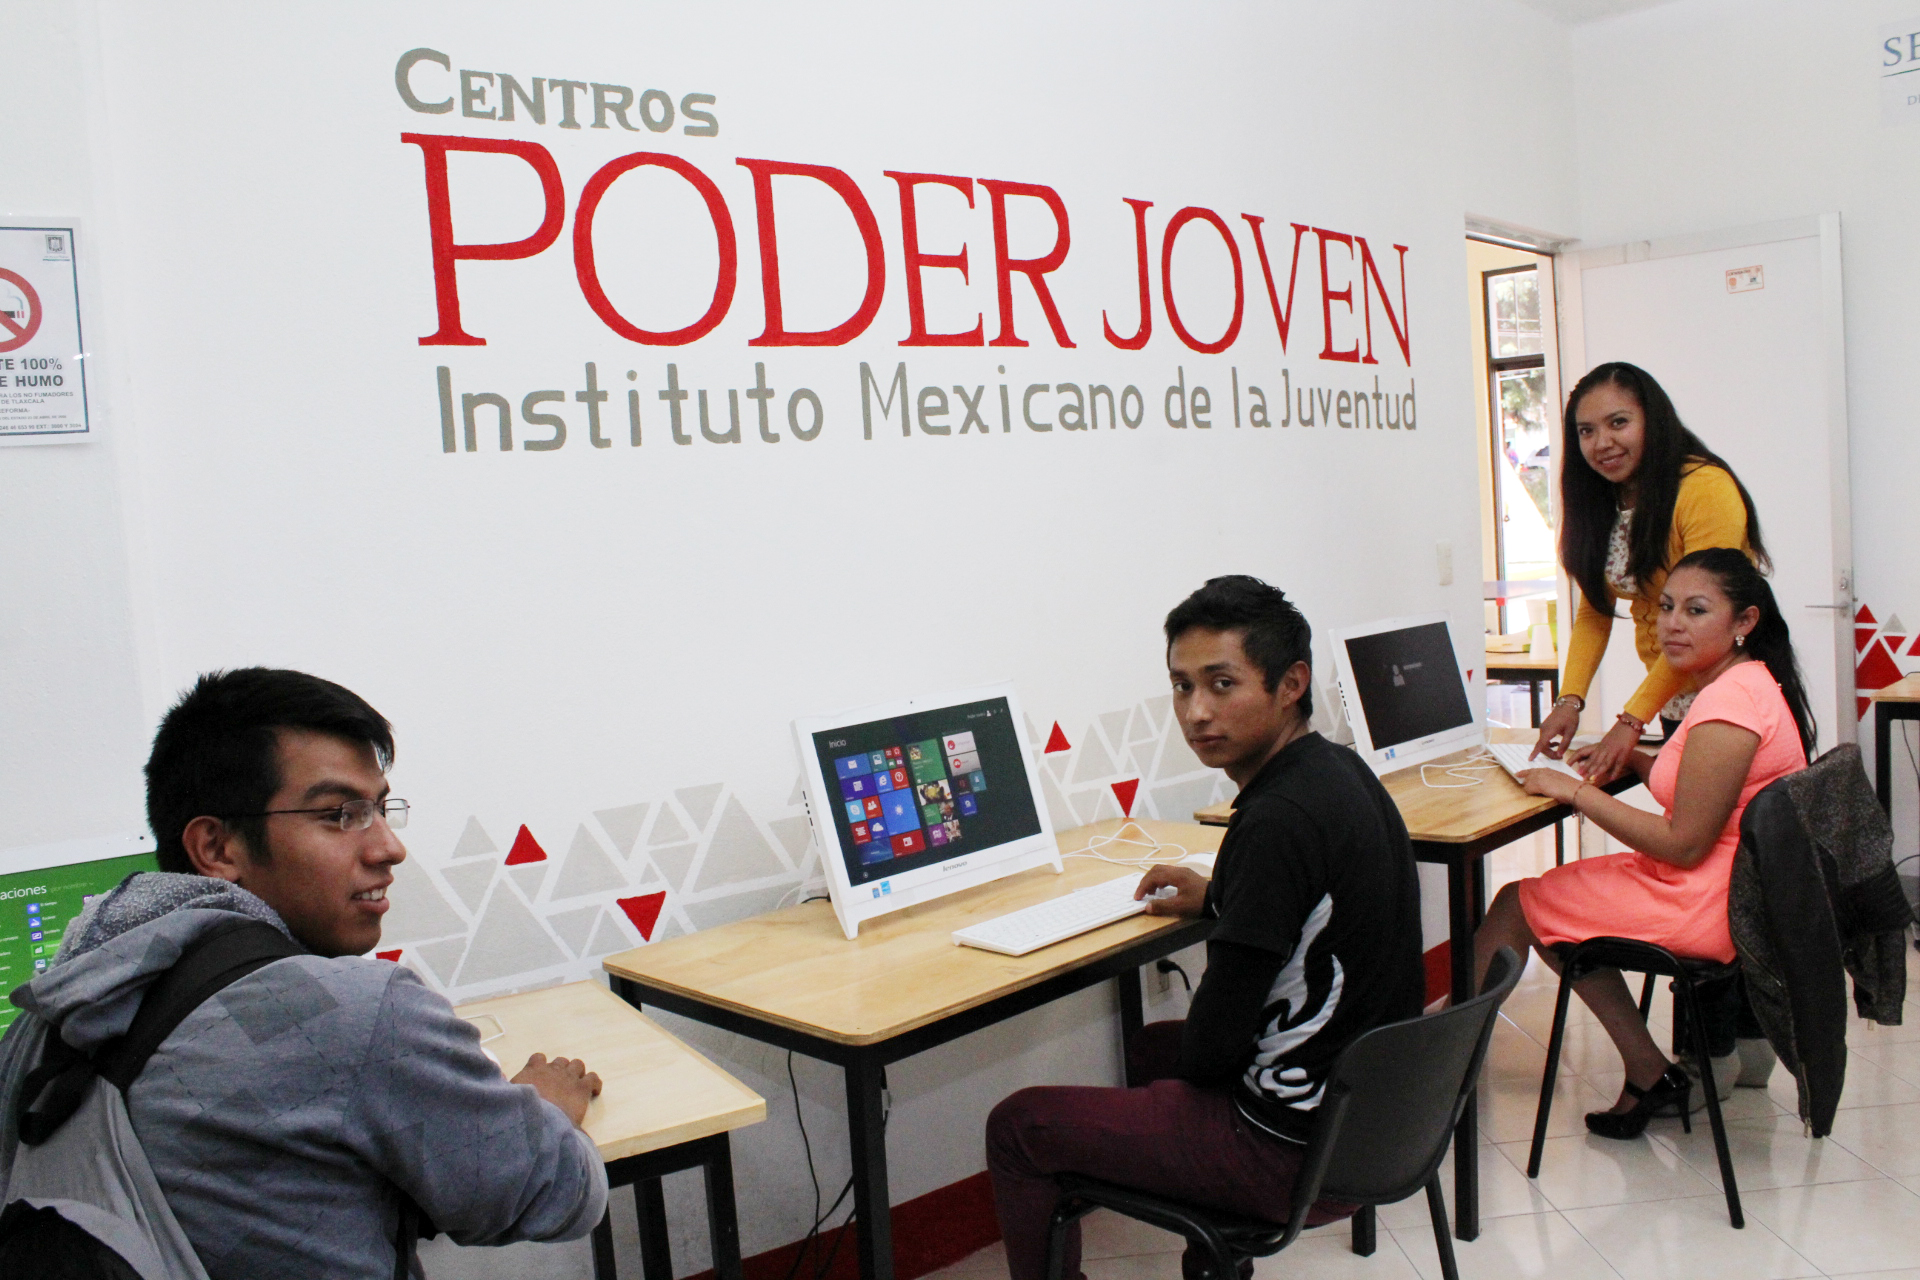 Los Centros Poder Joven son áreas de expresión, convivencia y desarrollo en donde las juventudes tienen acceso a las Tecnologías de la Información y la Comunicación.